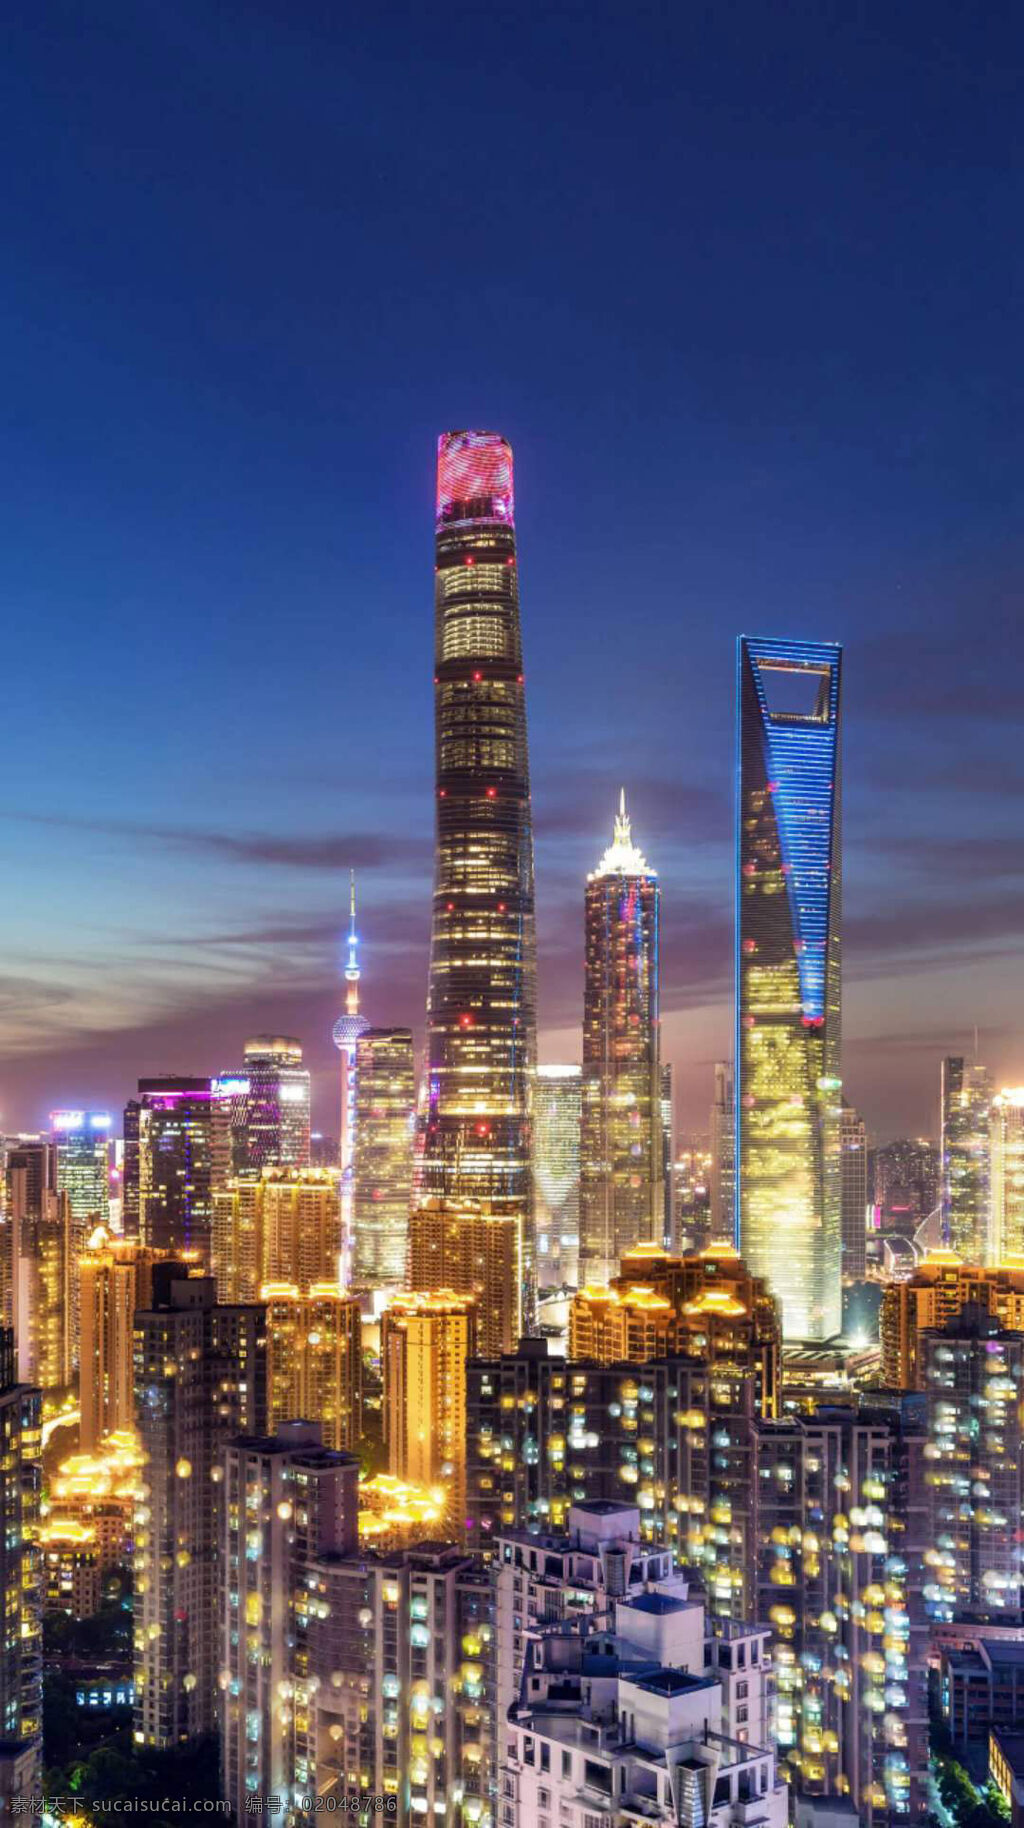 霓虹 闪烁 摩天大楼 图 灯火辉煌 灯火通明 高楼林立 繁华的都市 上海中心大厦 632米高 美丽的大厦 中国大厦 旅游摄影 人文景观